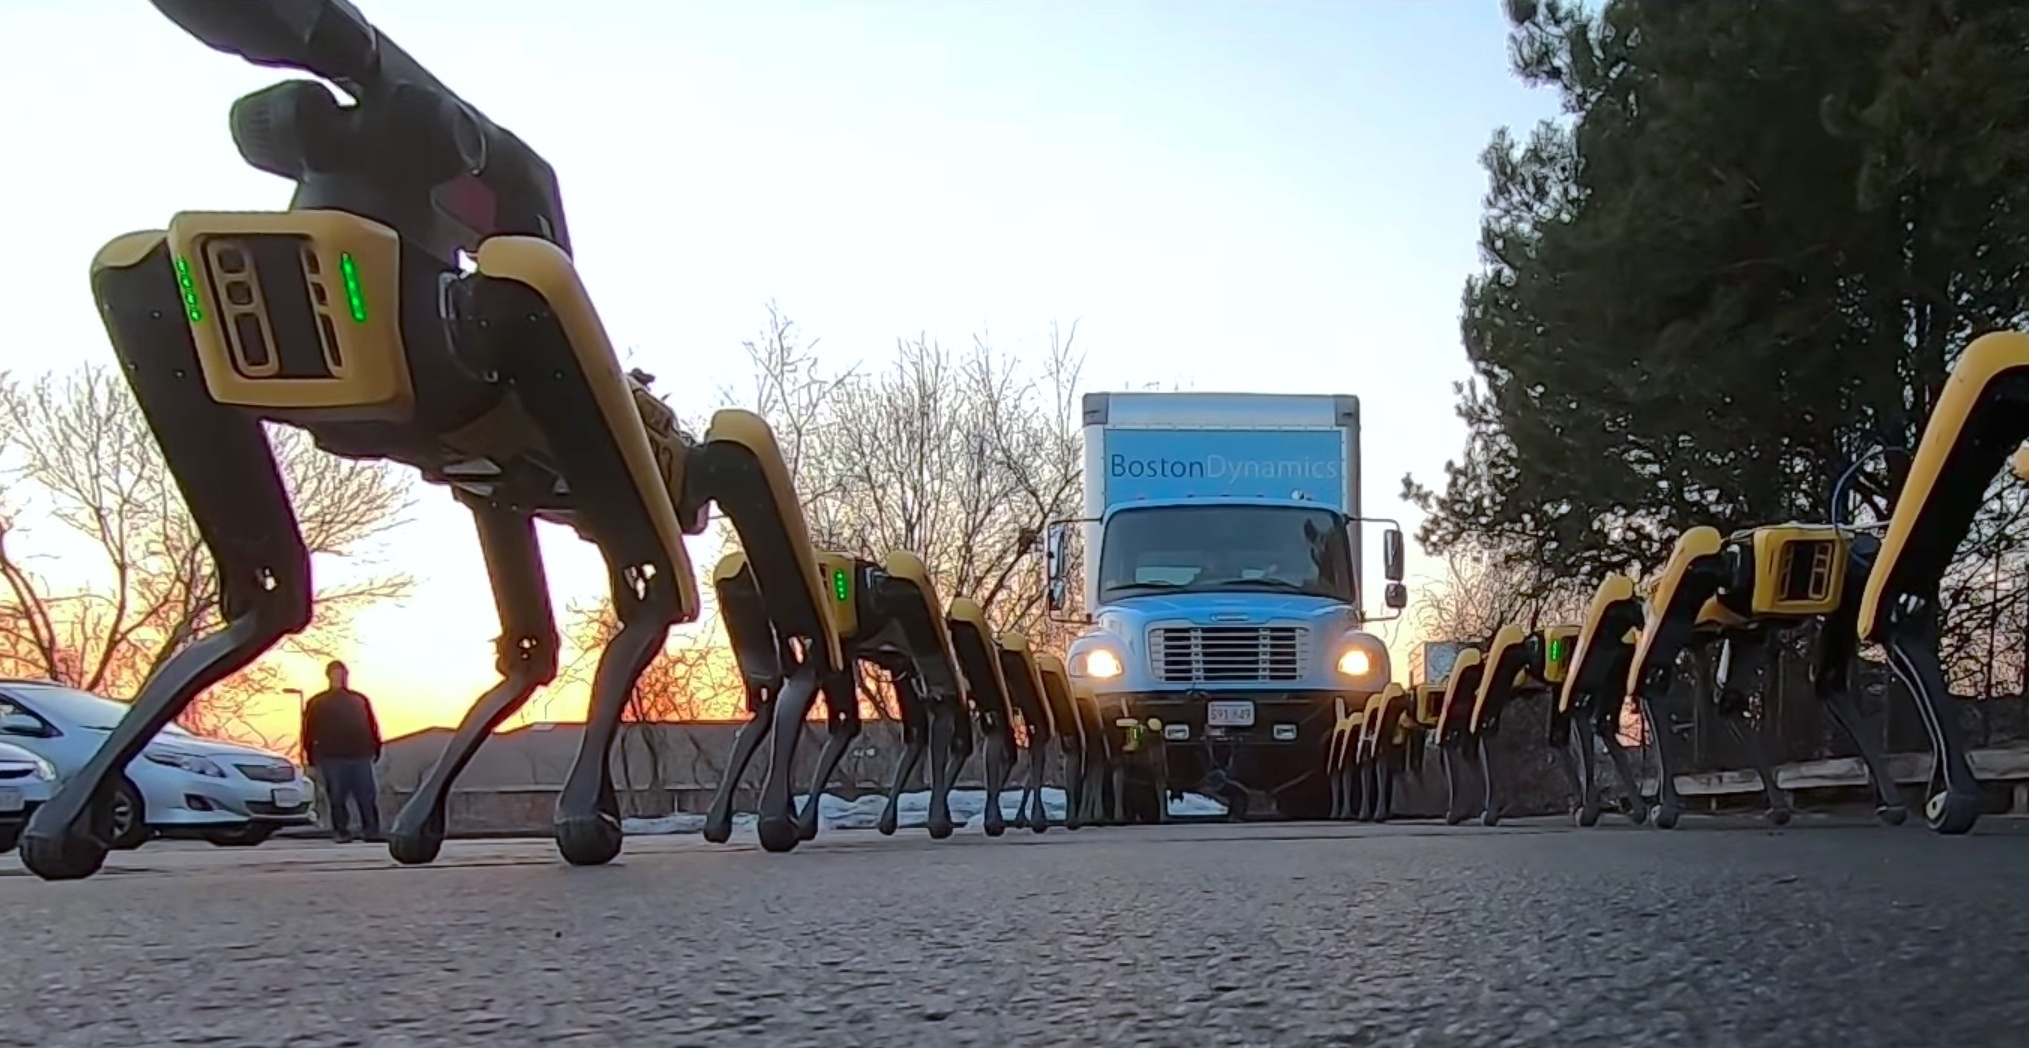 Kiedy "psi zaprzęg" od Boston Dynamics ciągnie ciężarówke 